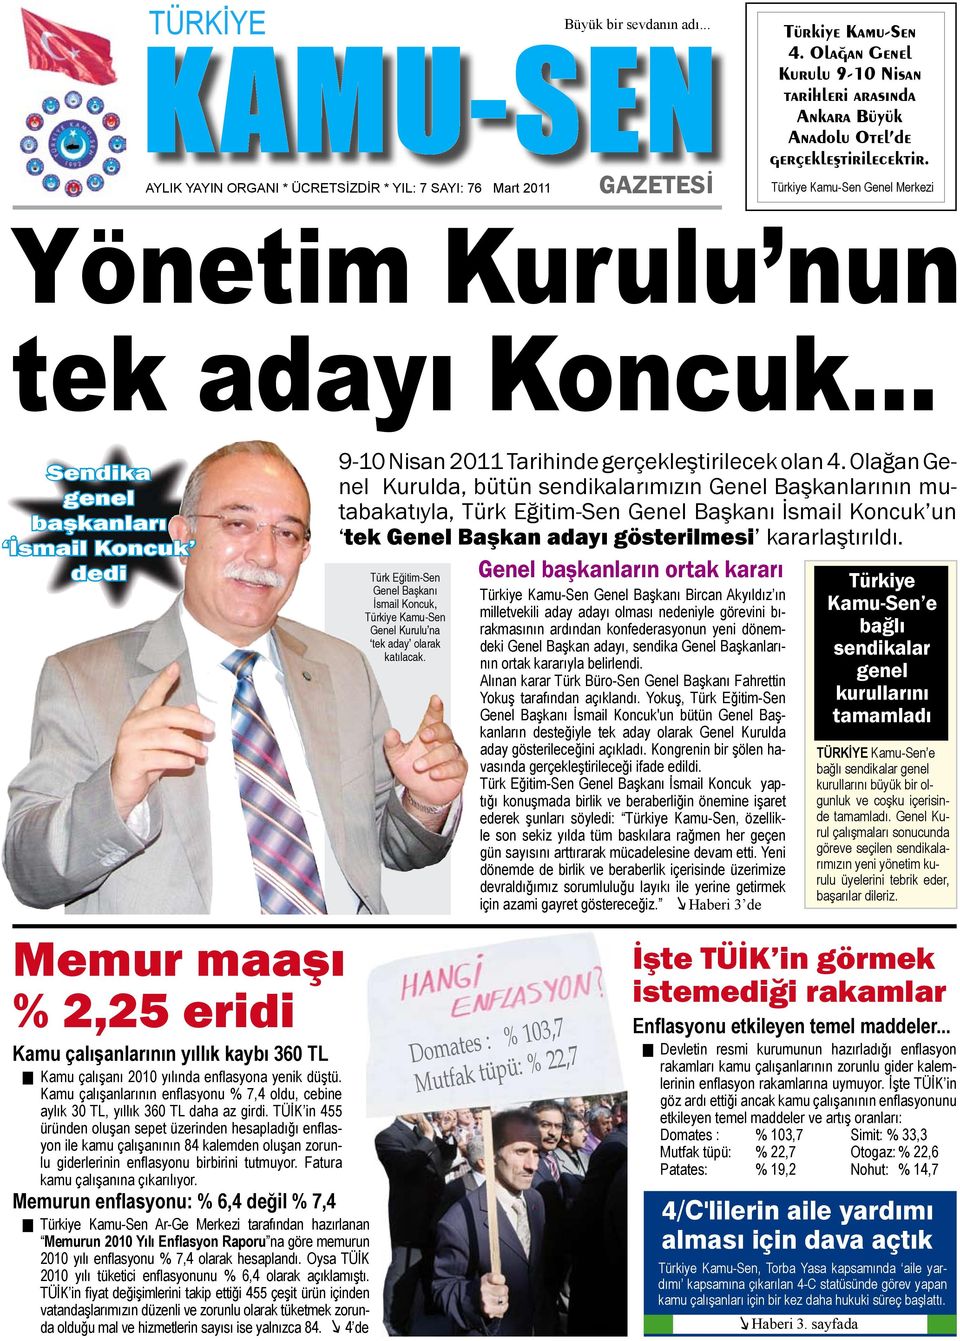 .. Sendika genel başkanları İsmail Koncuk dedi 9-10 Nisan 2011 Tarihinde gerçekleştirilecek olan 4.